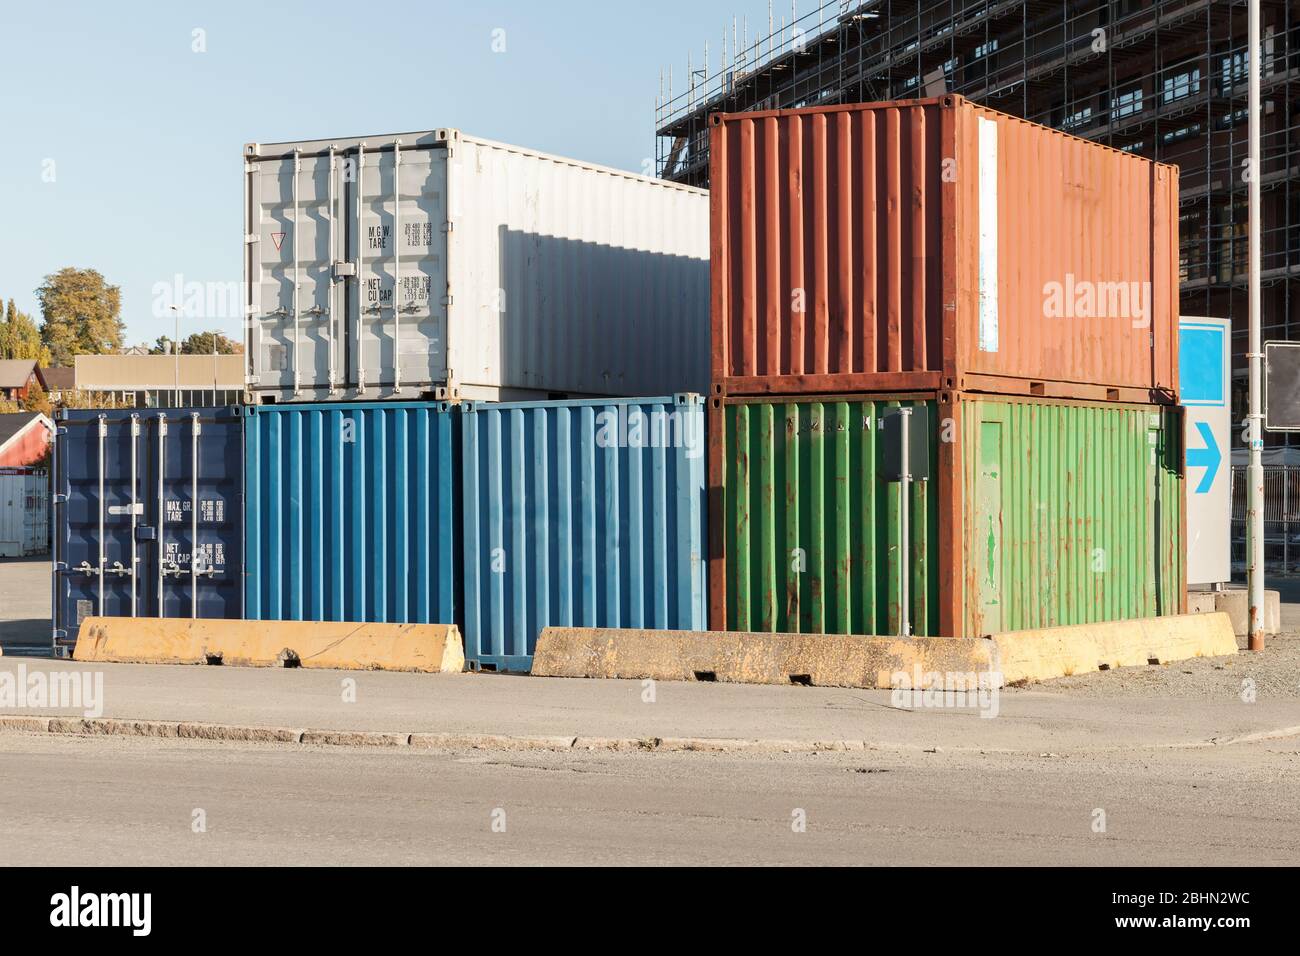 Gestapelte Gruppe von Frachtcontainern ist in einem Hafenviertel, moderne industrielle Schifffahrtsausrüstung Stockfoto